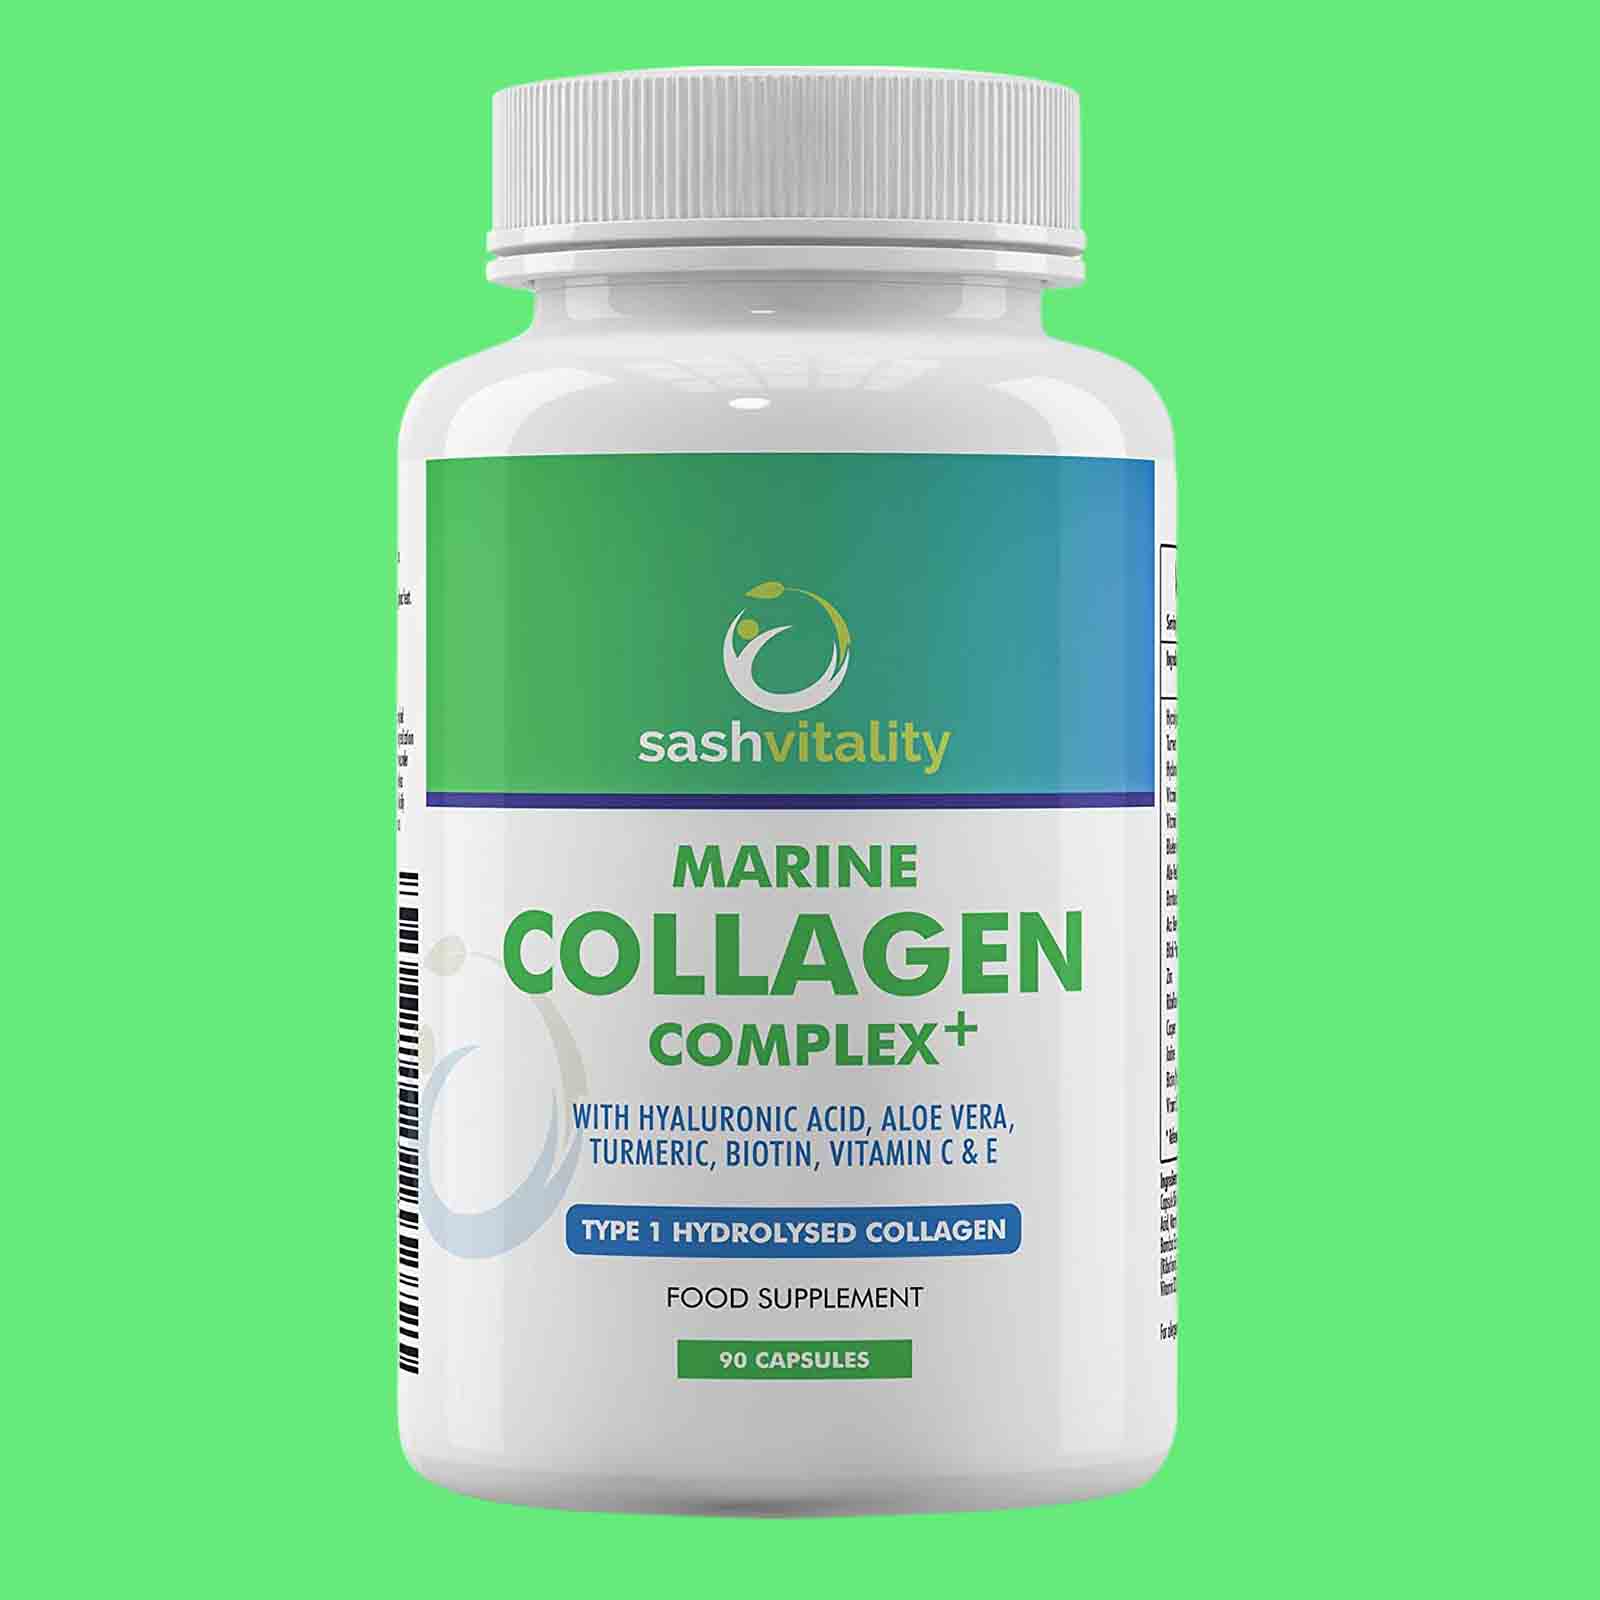 Marine Collagen Complex